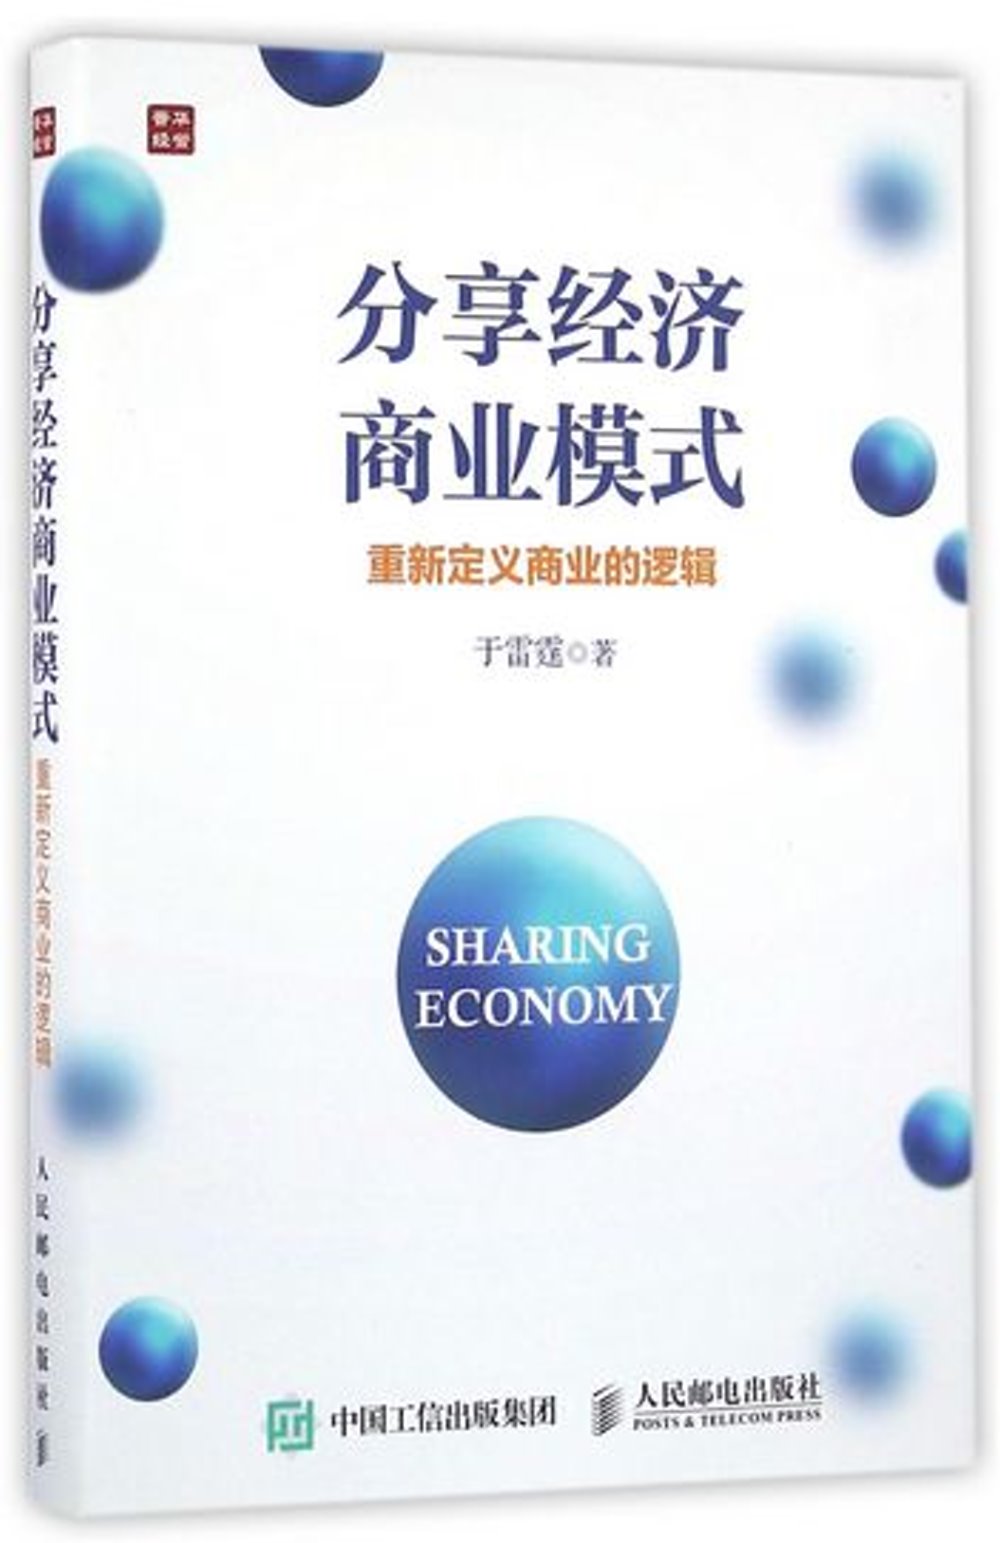 分享經濟商業模式：重新定義商業的邏輯